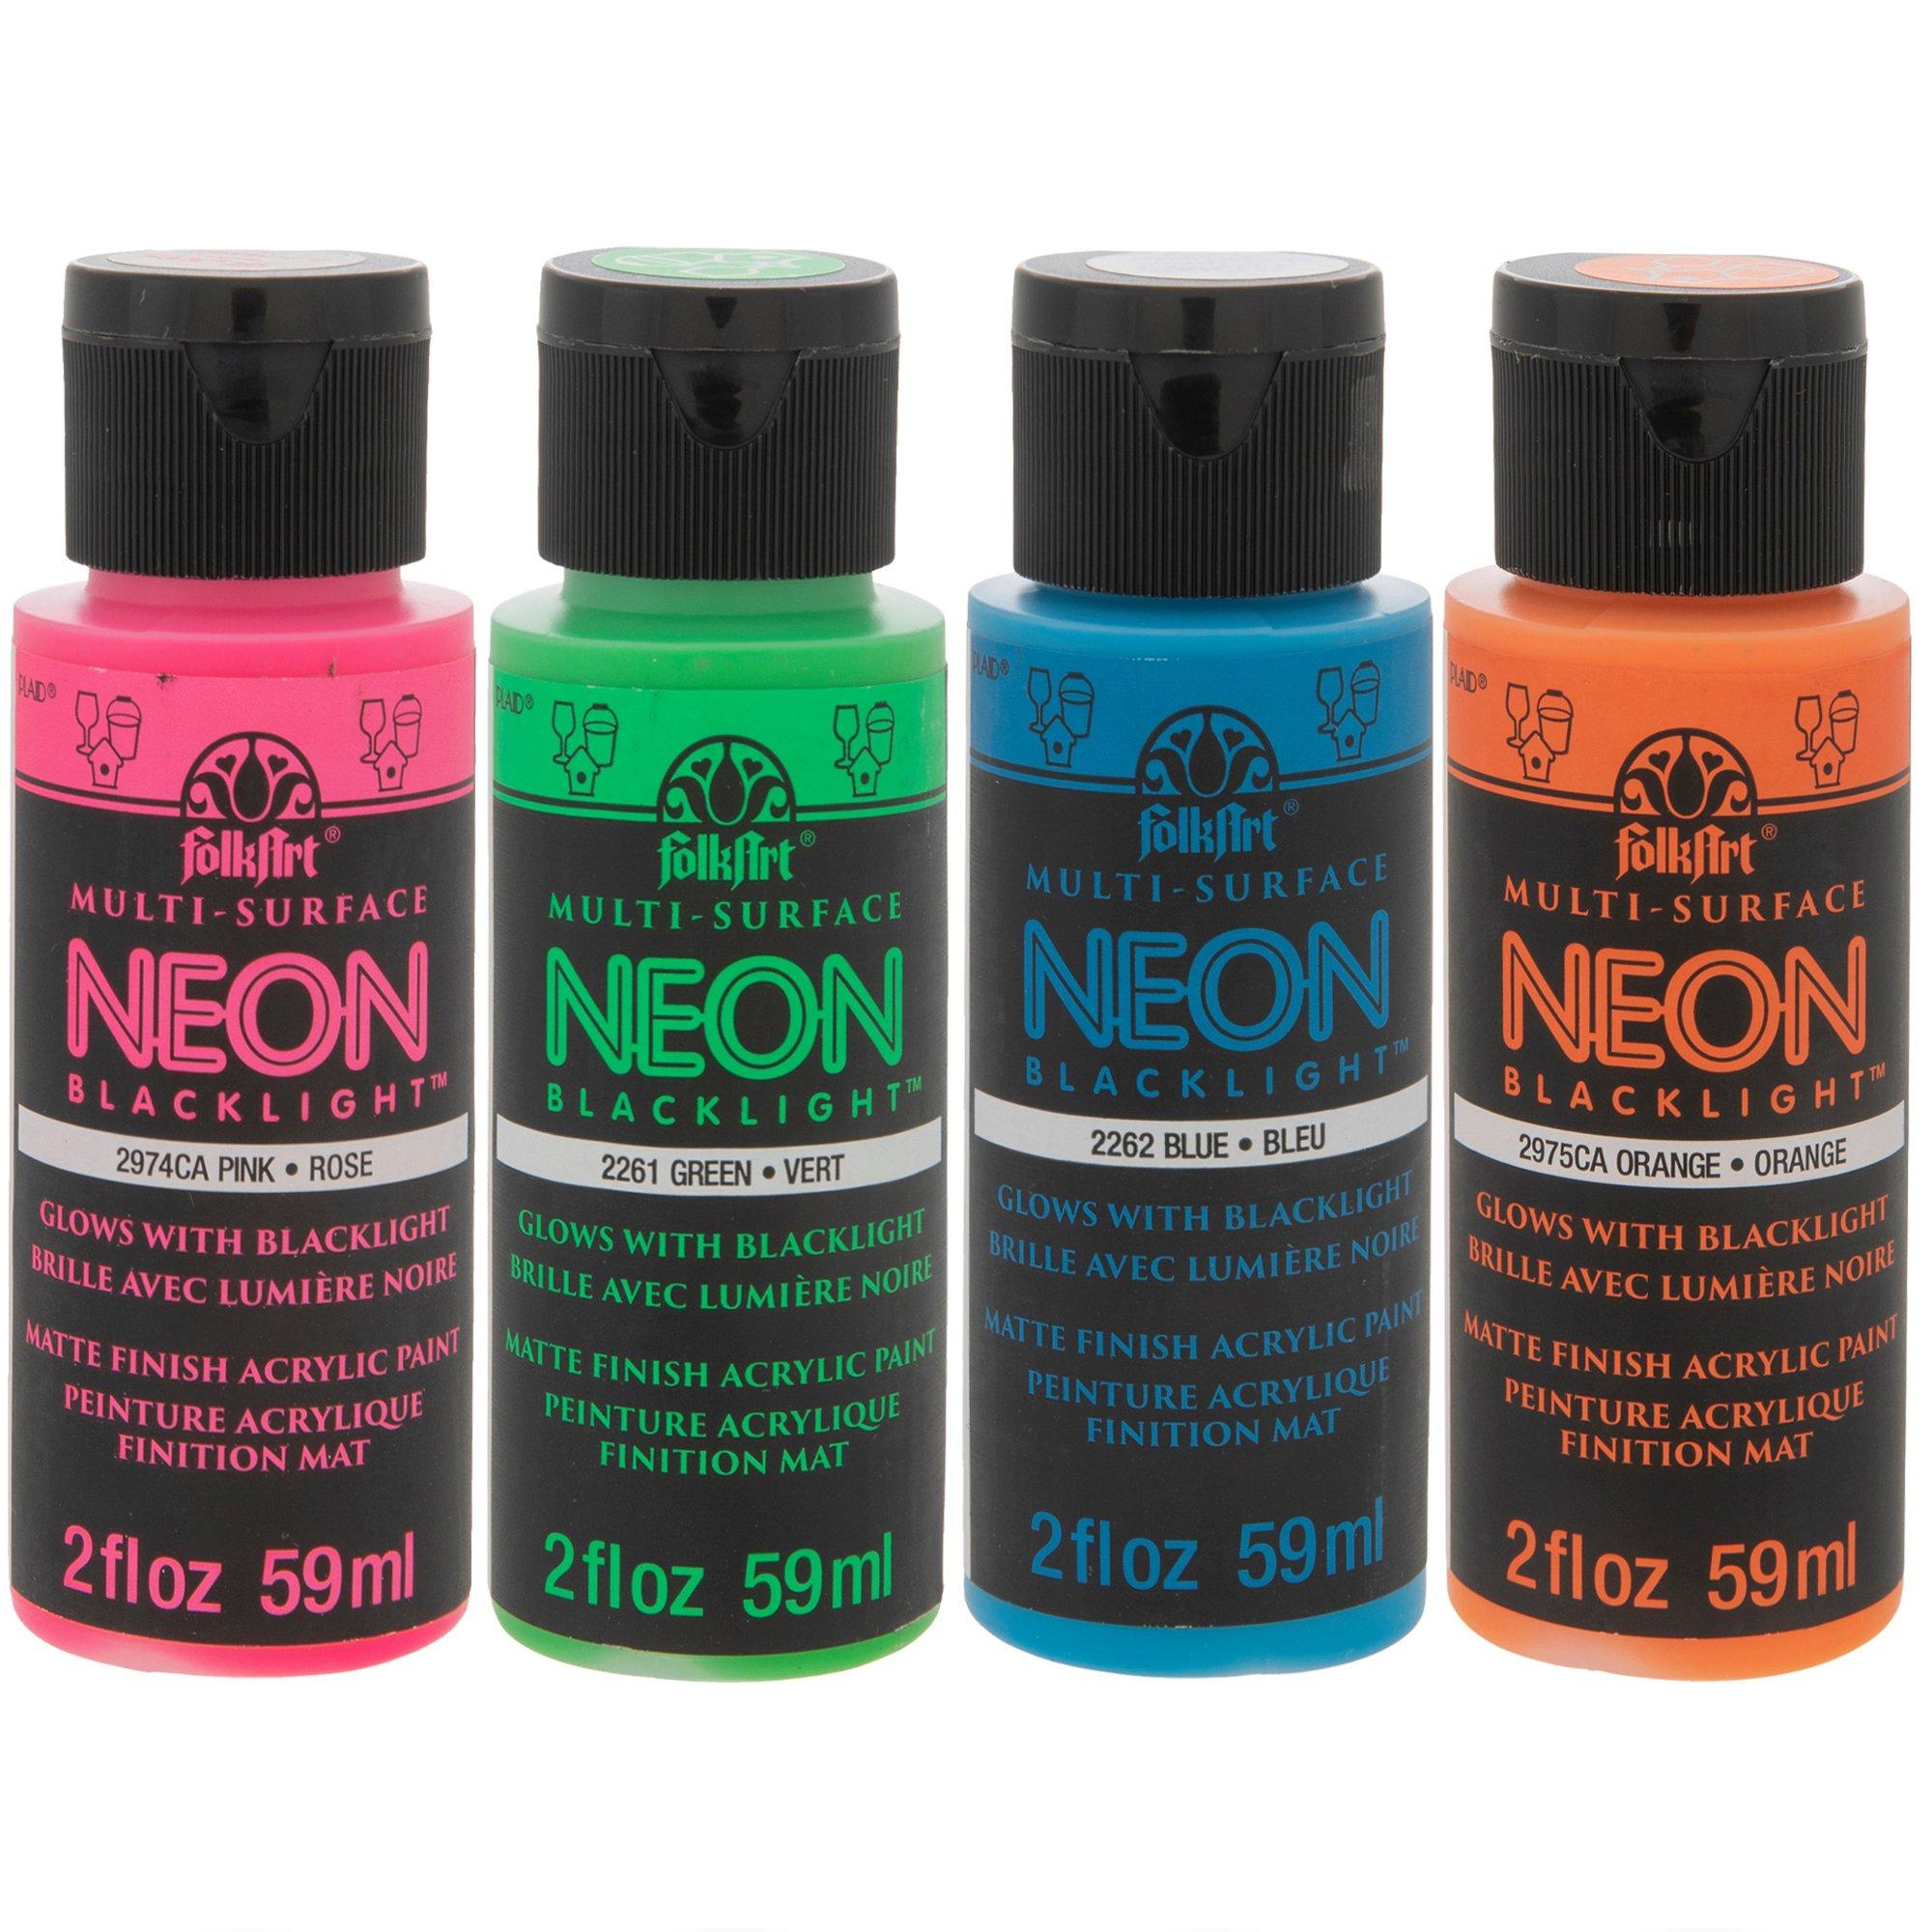 Artecho Neon Paint - Set of 6 Colors, 59 2 Fl Oz (Pack 6), Neon-6 colors